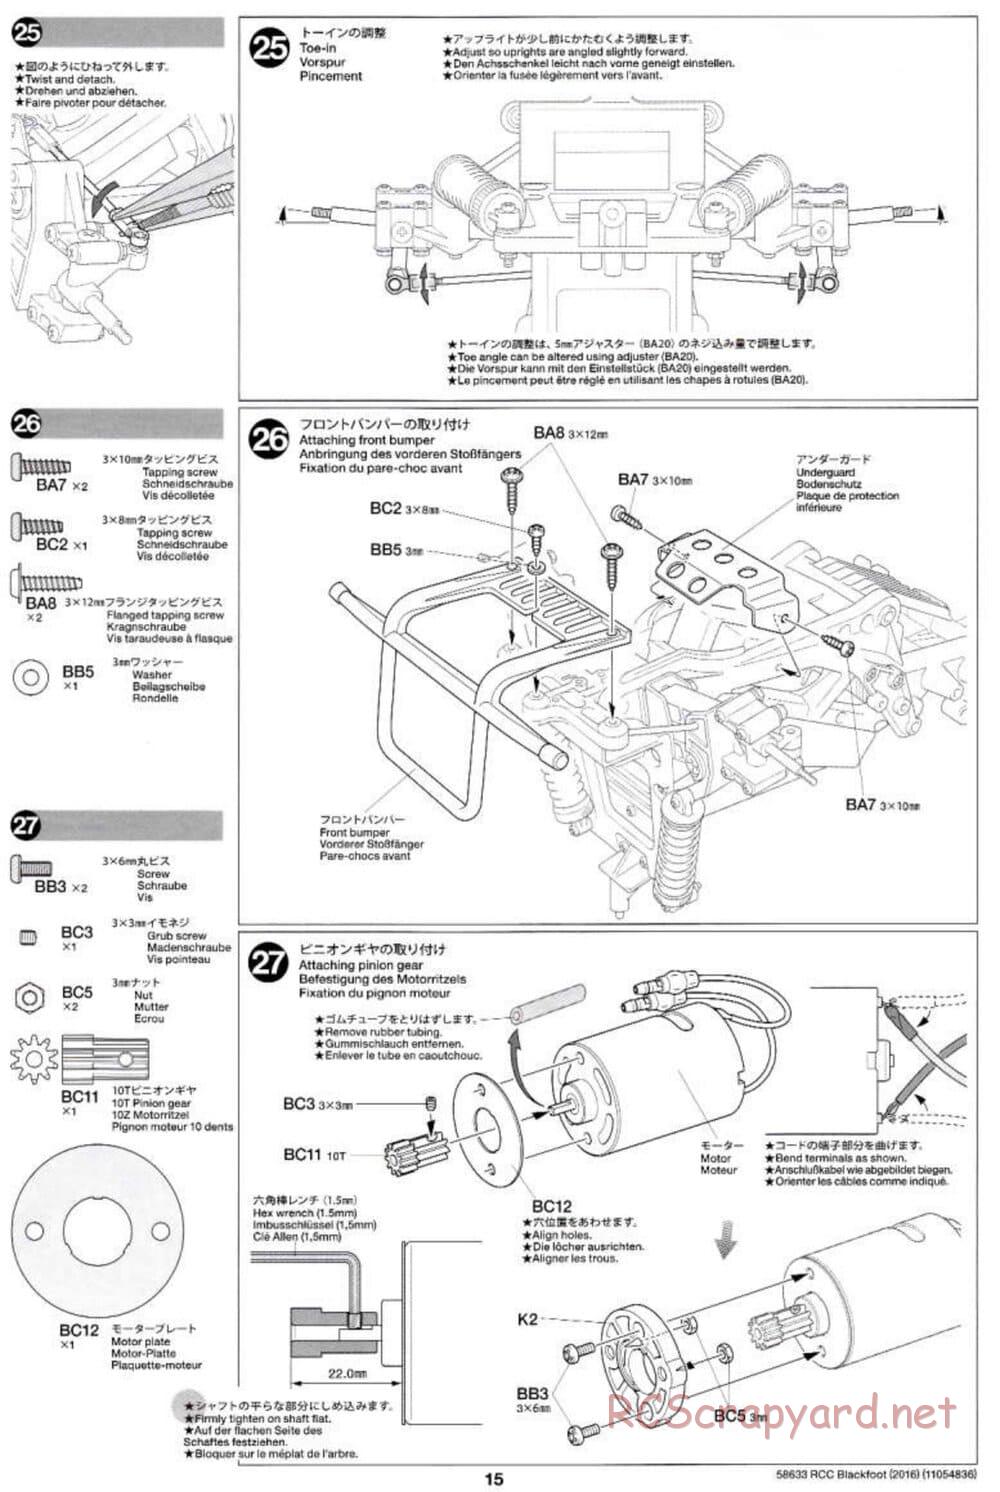 Tamiya - Blackfoot 2016 - ORV Chassis - Manual - Page 15